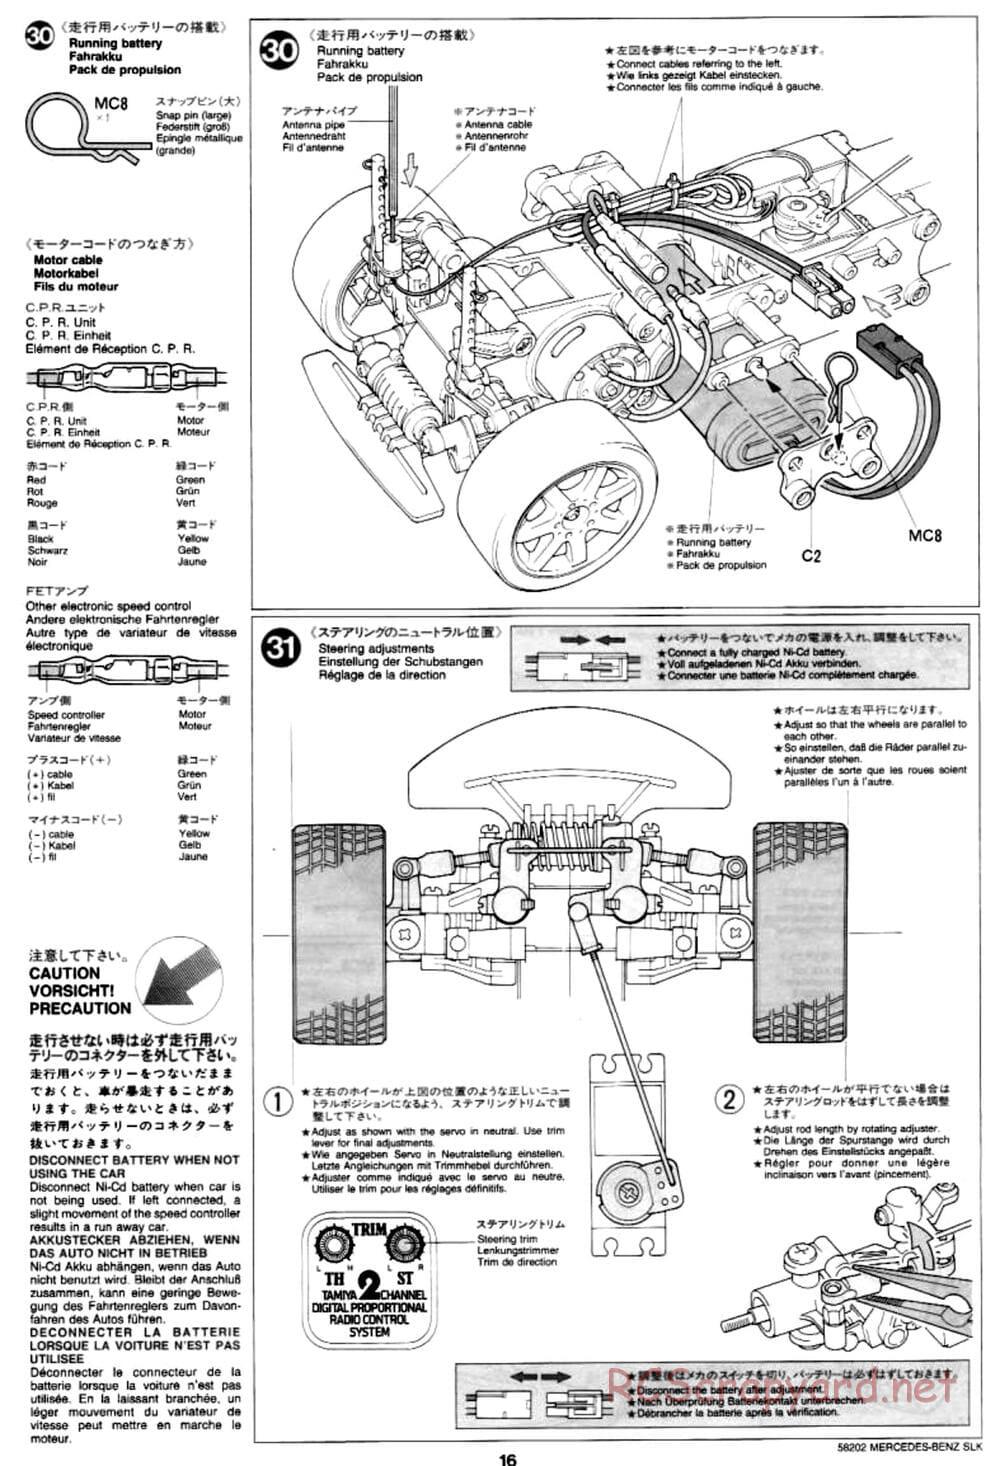 Tamiya - Mercedes-Benz SLK - M02L Chassis - Manual - Page 16